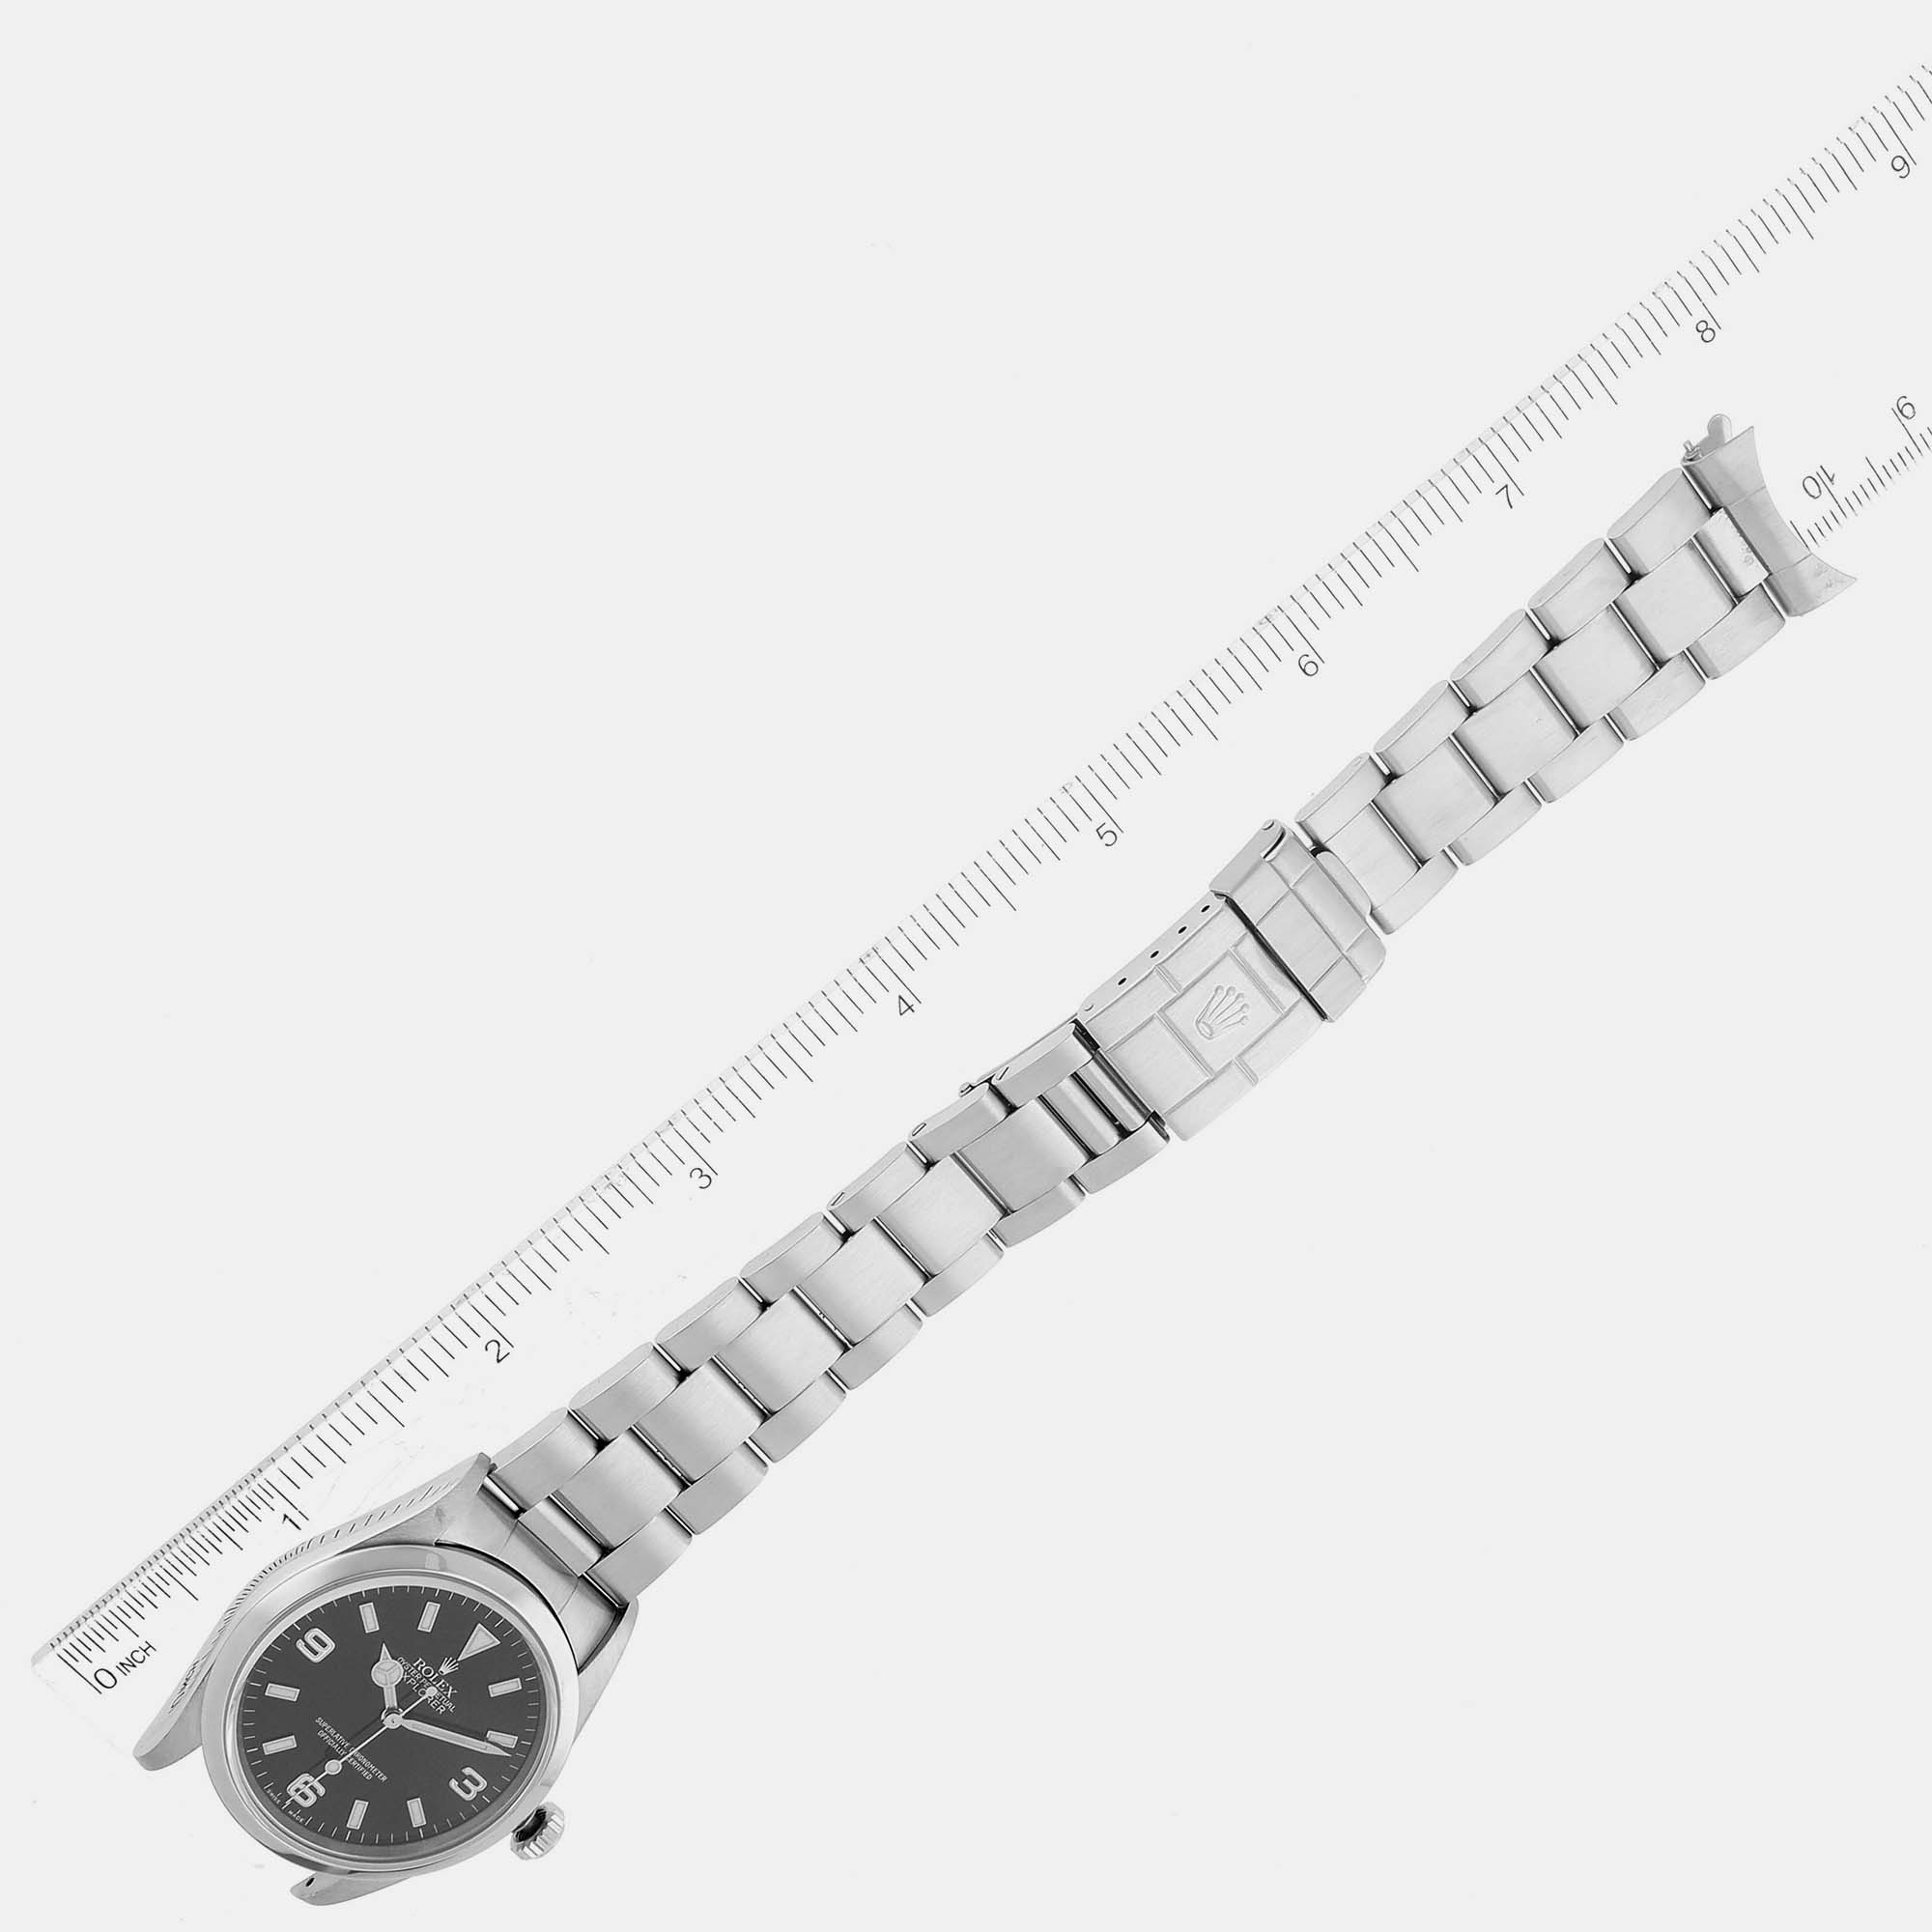 Rolex Explorer I Black Dial Steel Men's Watch 14270 36 Mm